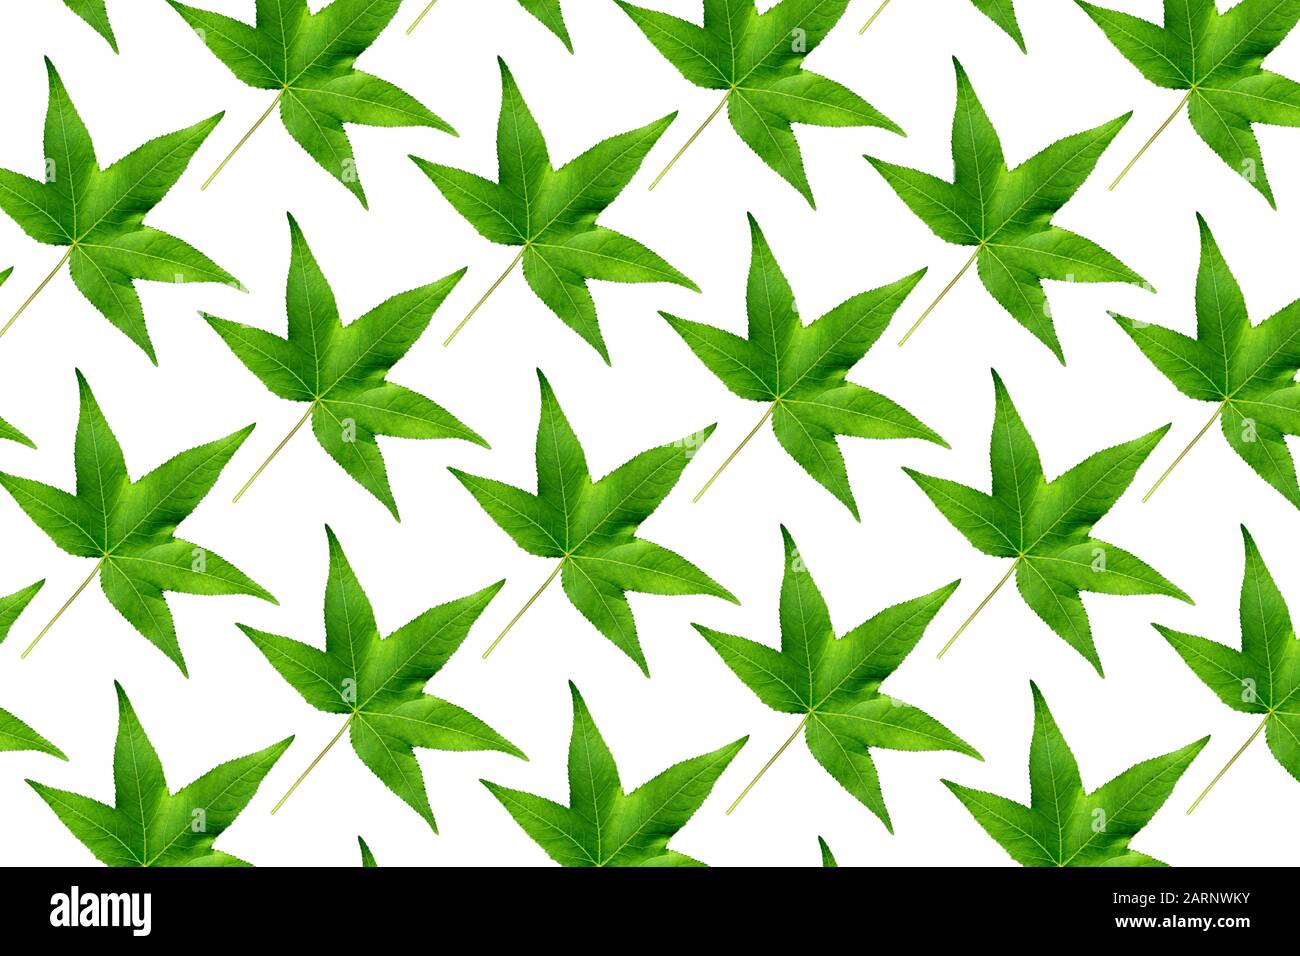 Naturaleza background.Pattern de hojas de arce verde sobre fondo blanco. Concepto de primavera Foto de stock